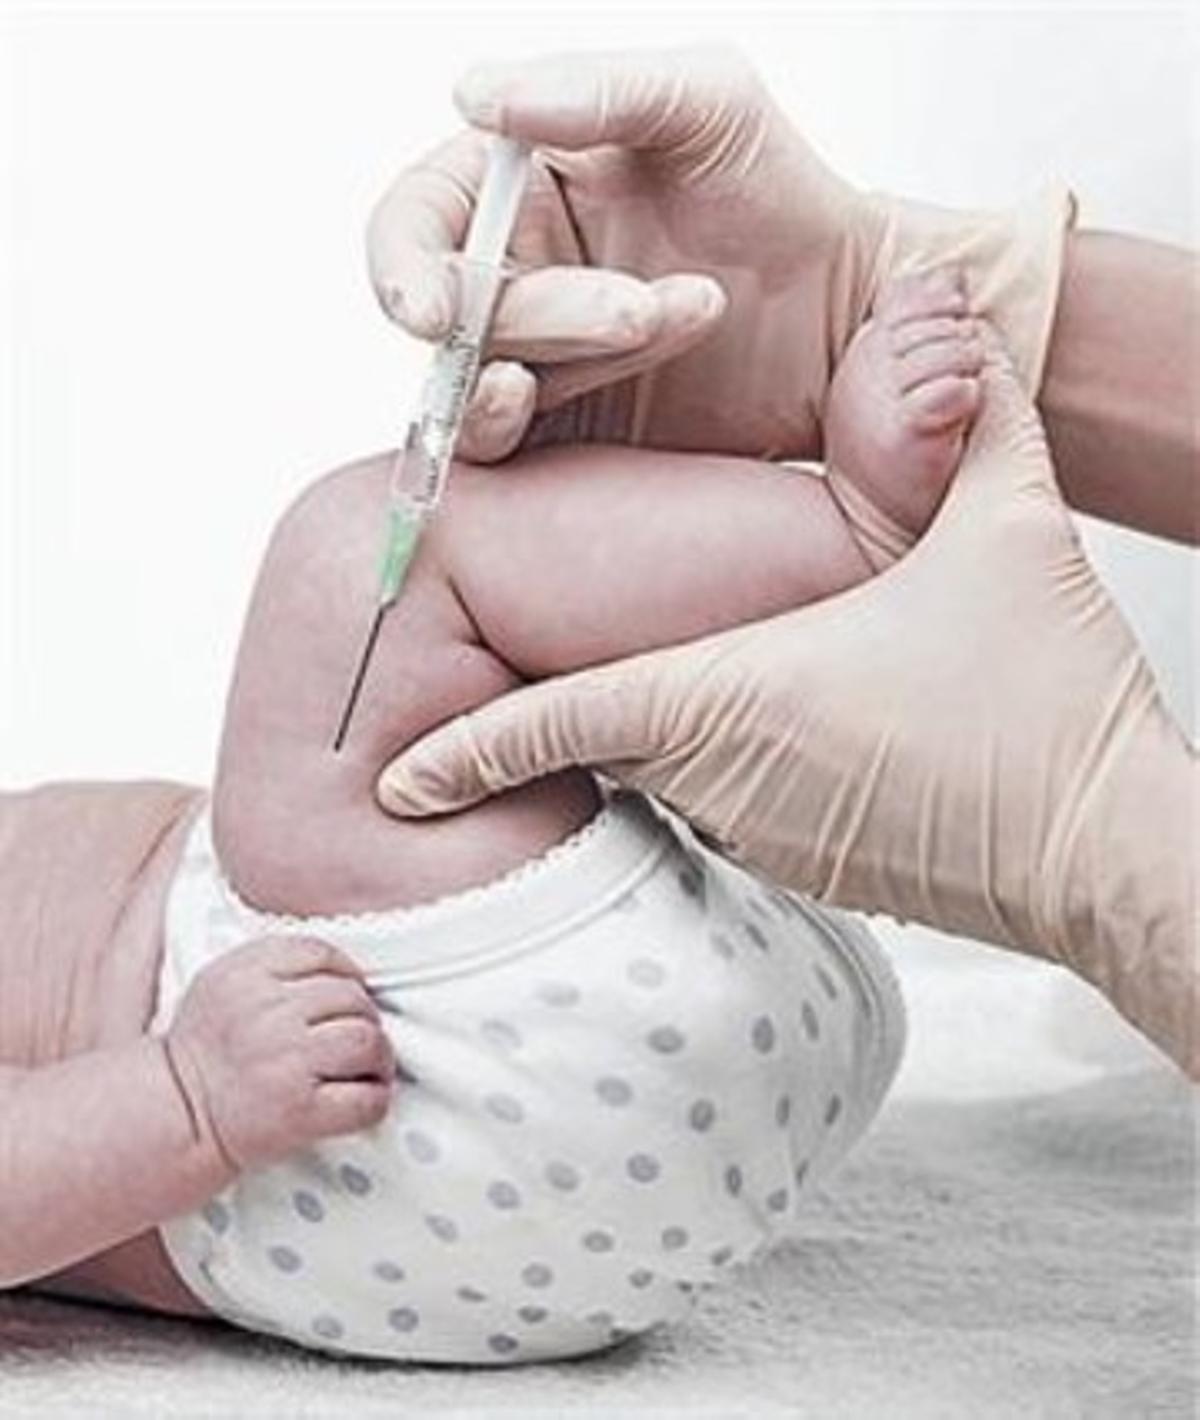 Imagen de la vacunación de un bebé.